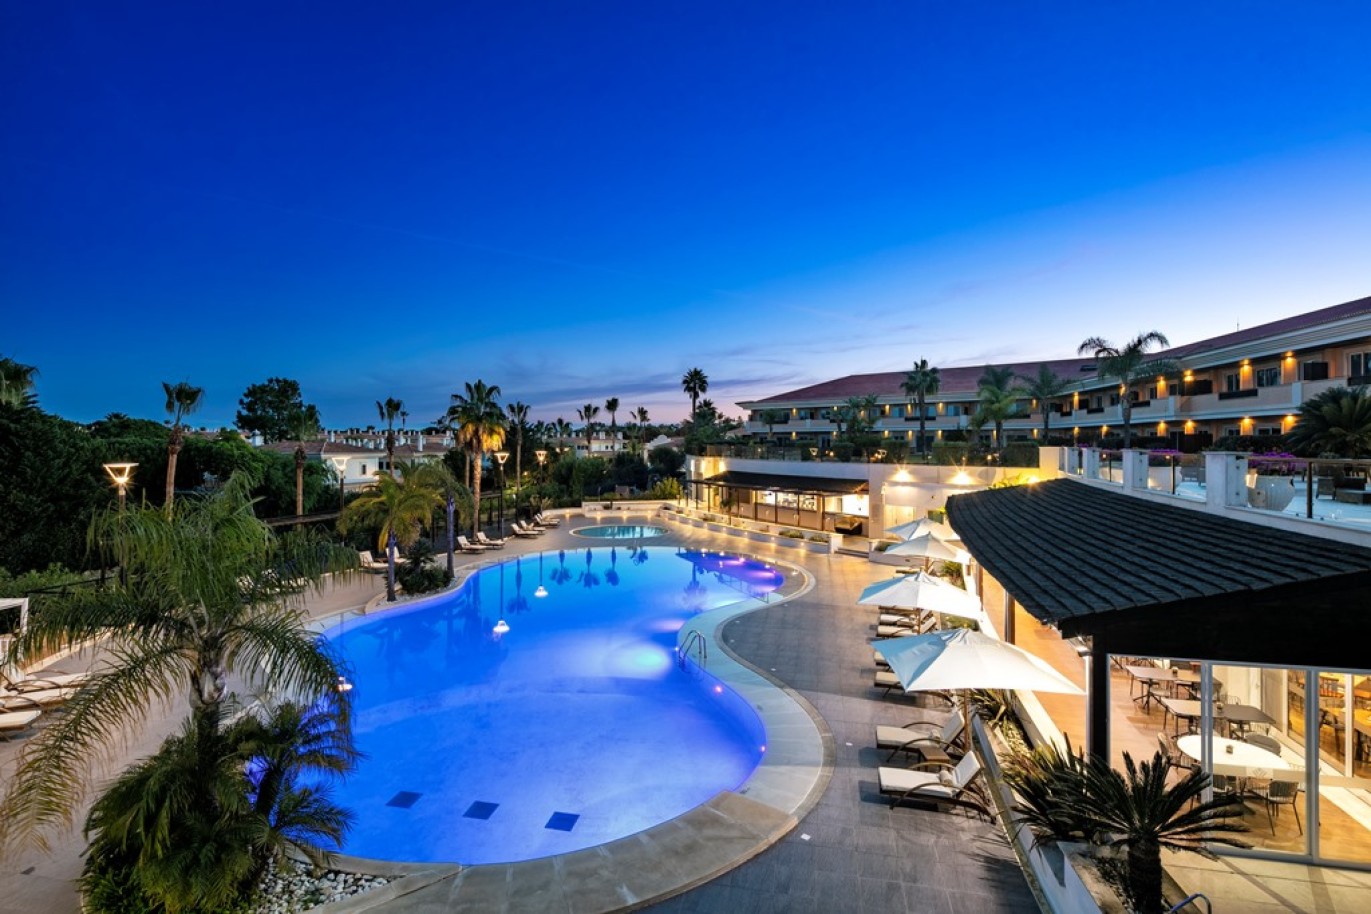 Apartamento, 2 quartos, piscina, para venda na Quinta do Lago, Algarve_263435